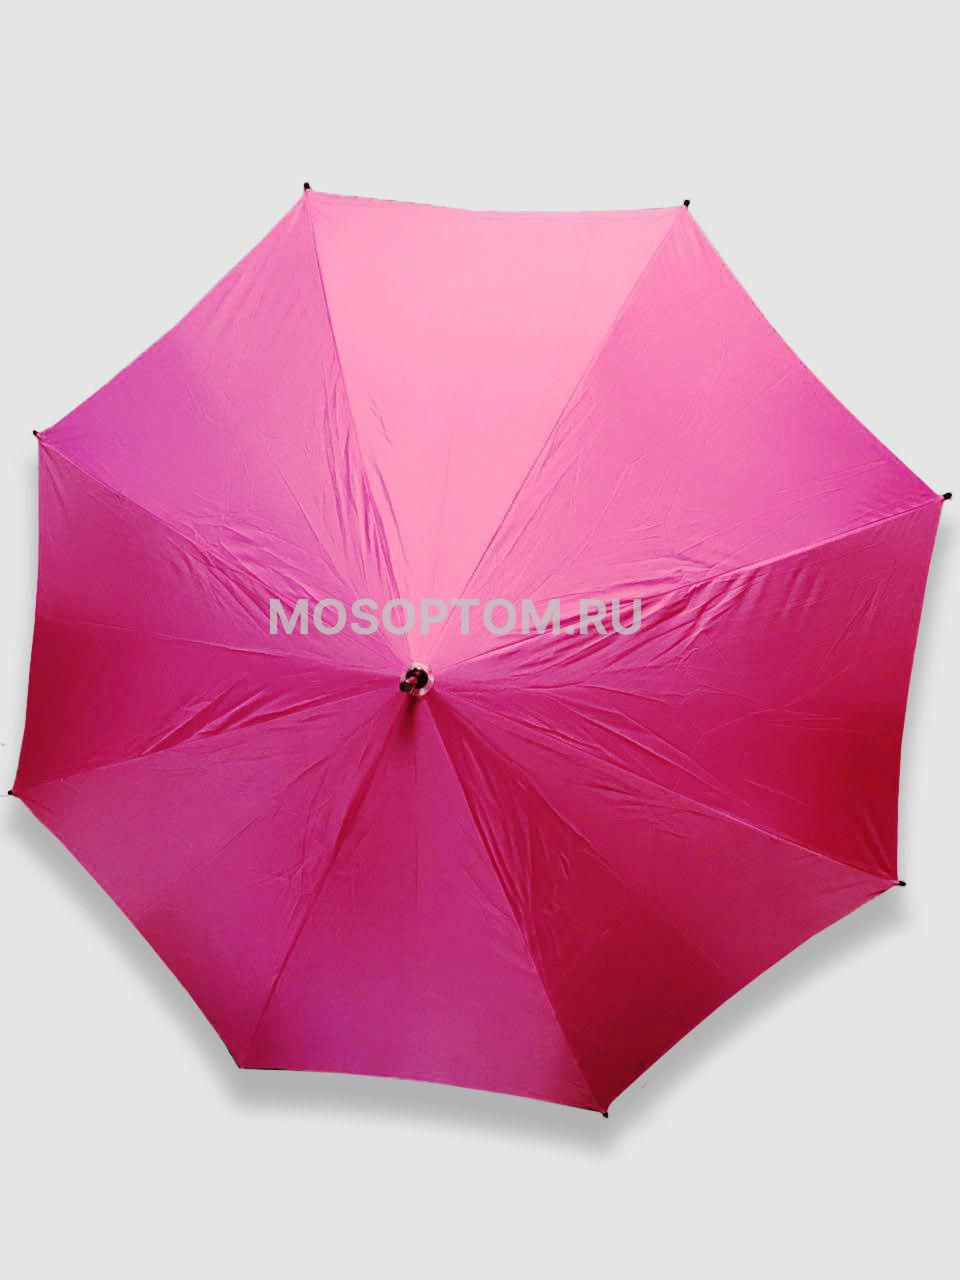 Двухсторонний зонт с обратным открыванием оптом  - Фото №4